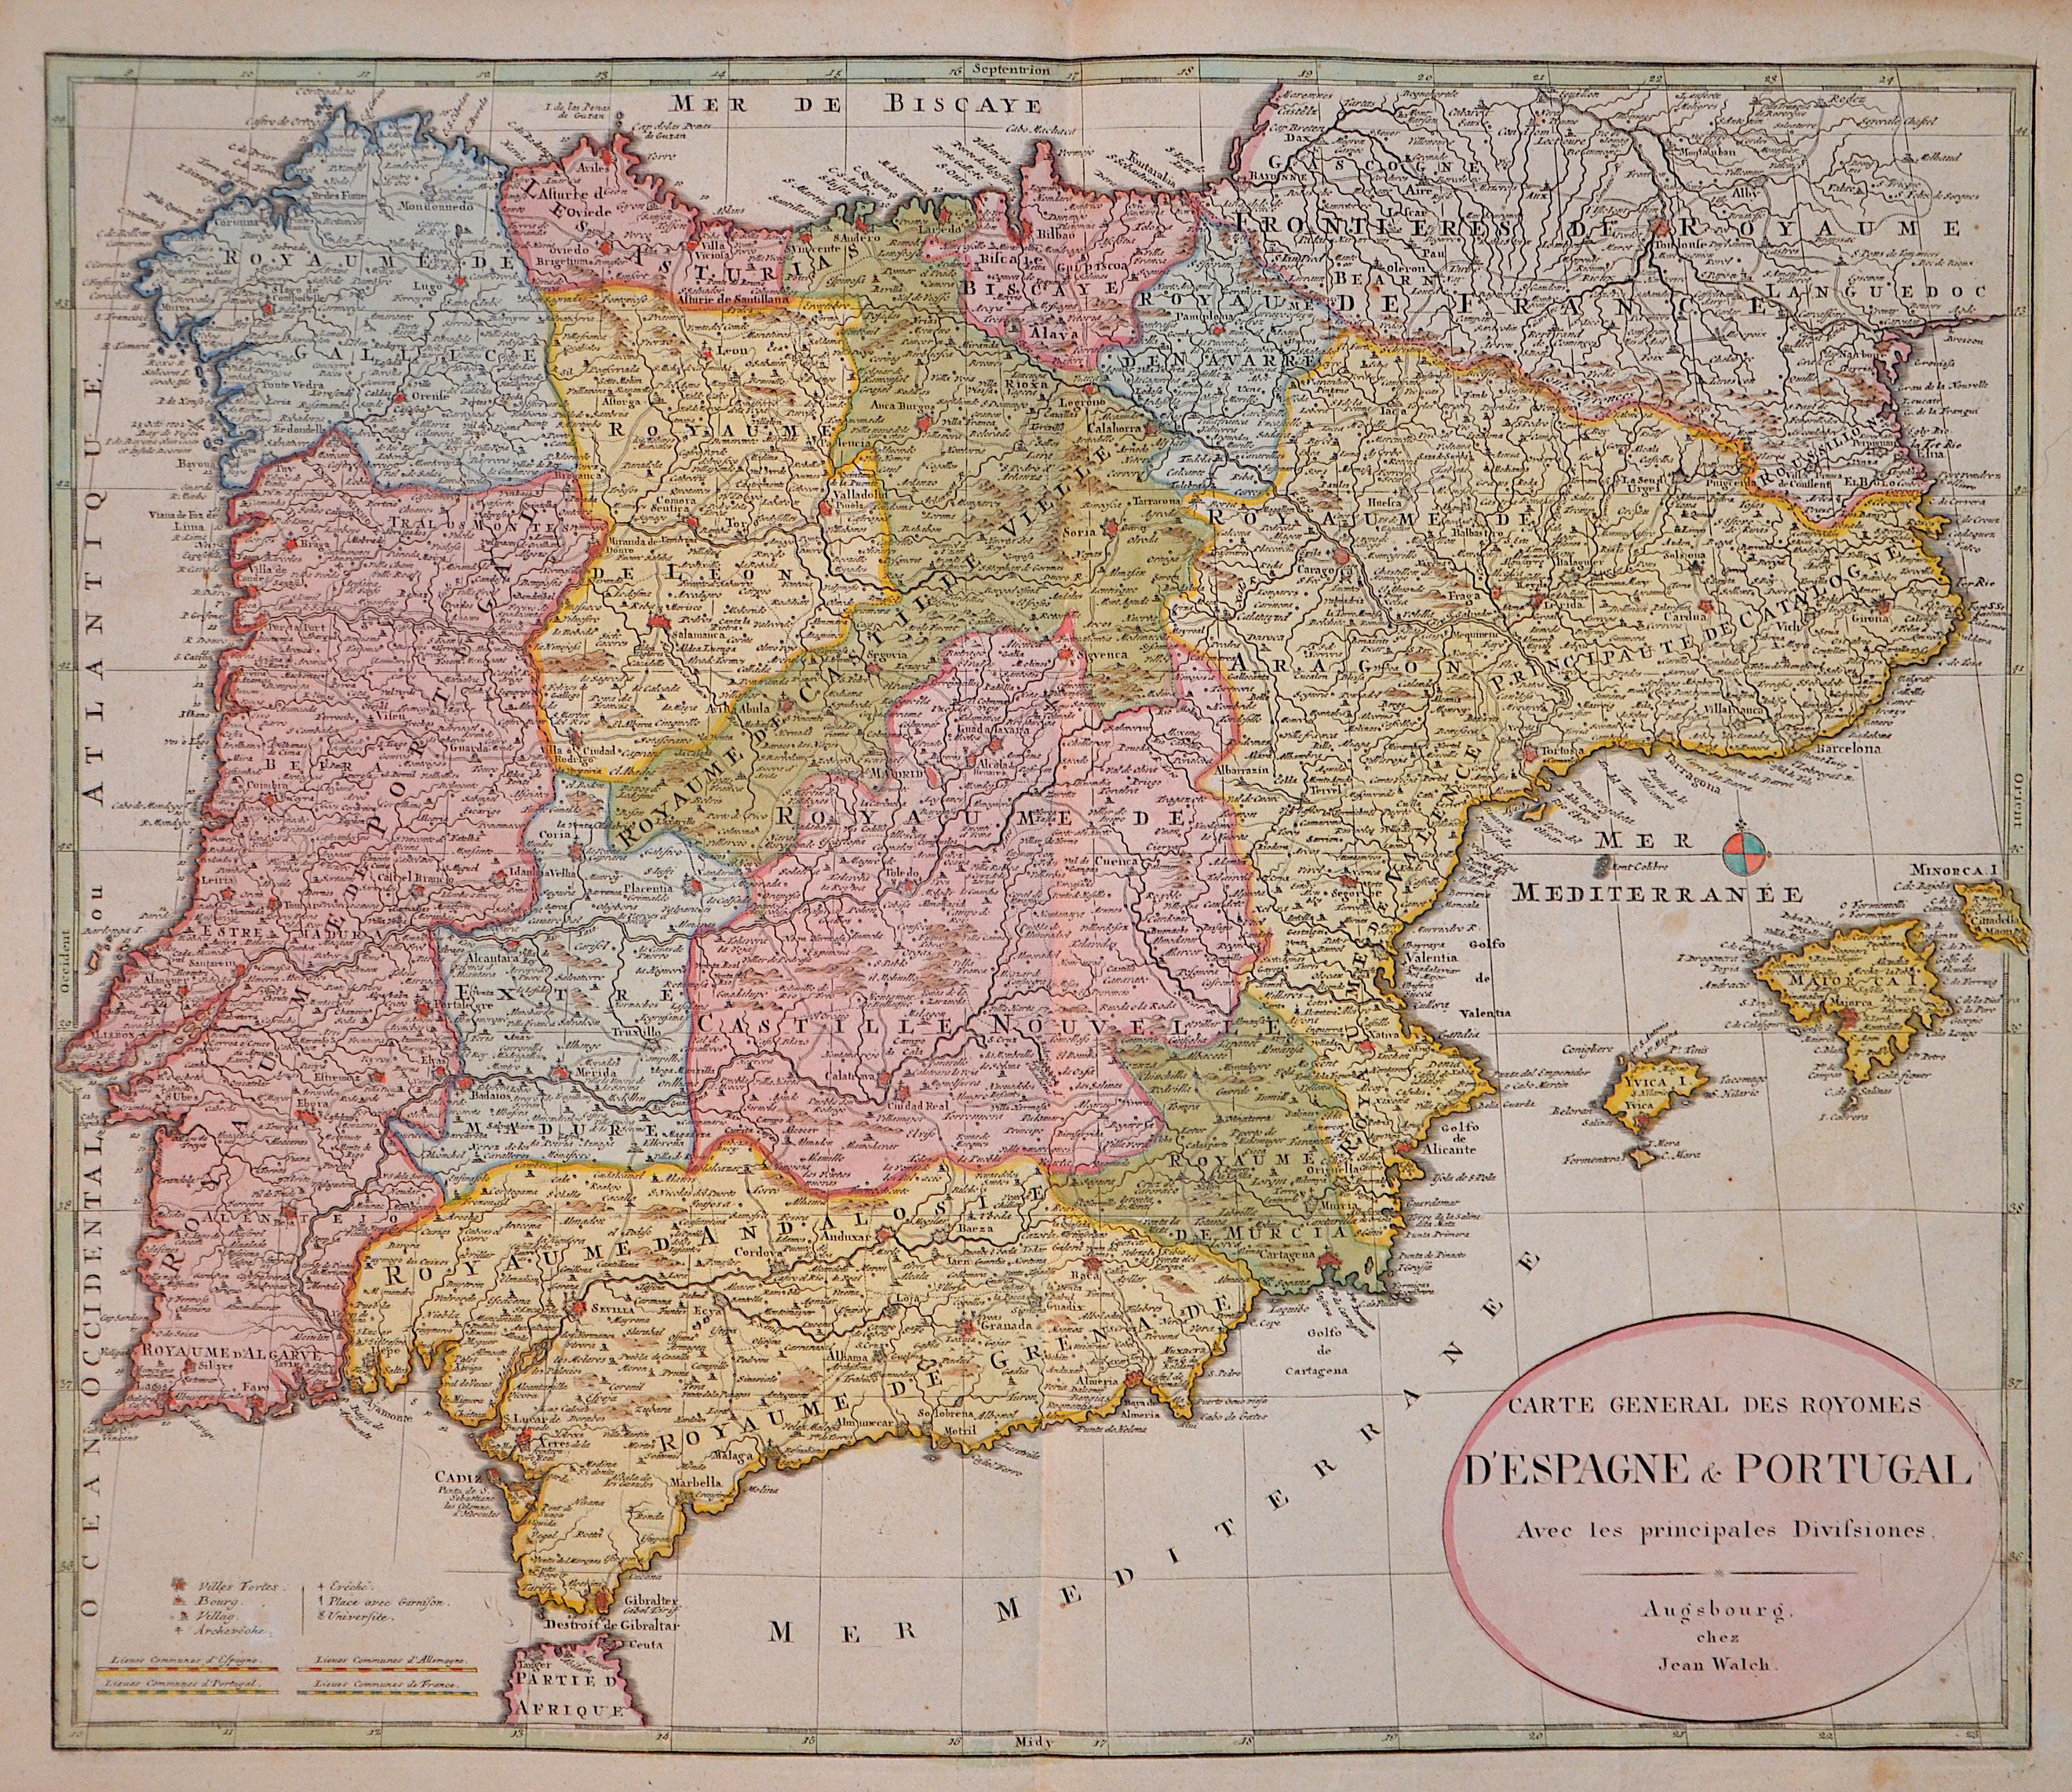 Walch Johann Carte General des Royomes d’Espagne & Portugal.  Avec les principales Divisiones.